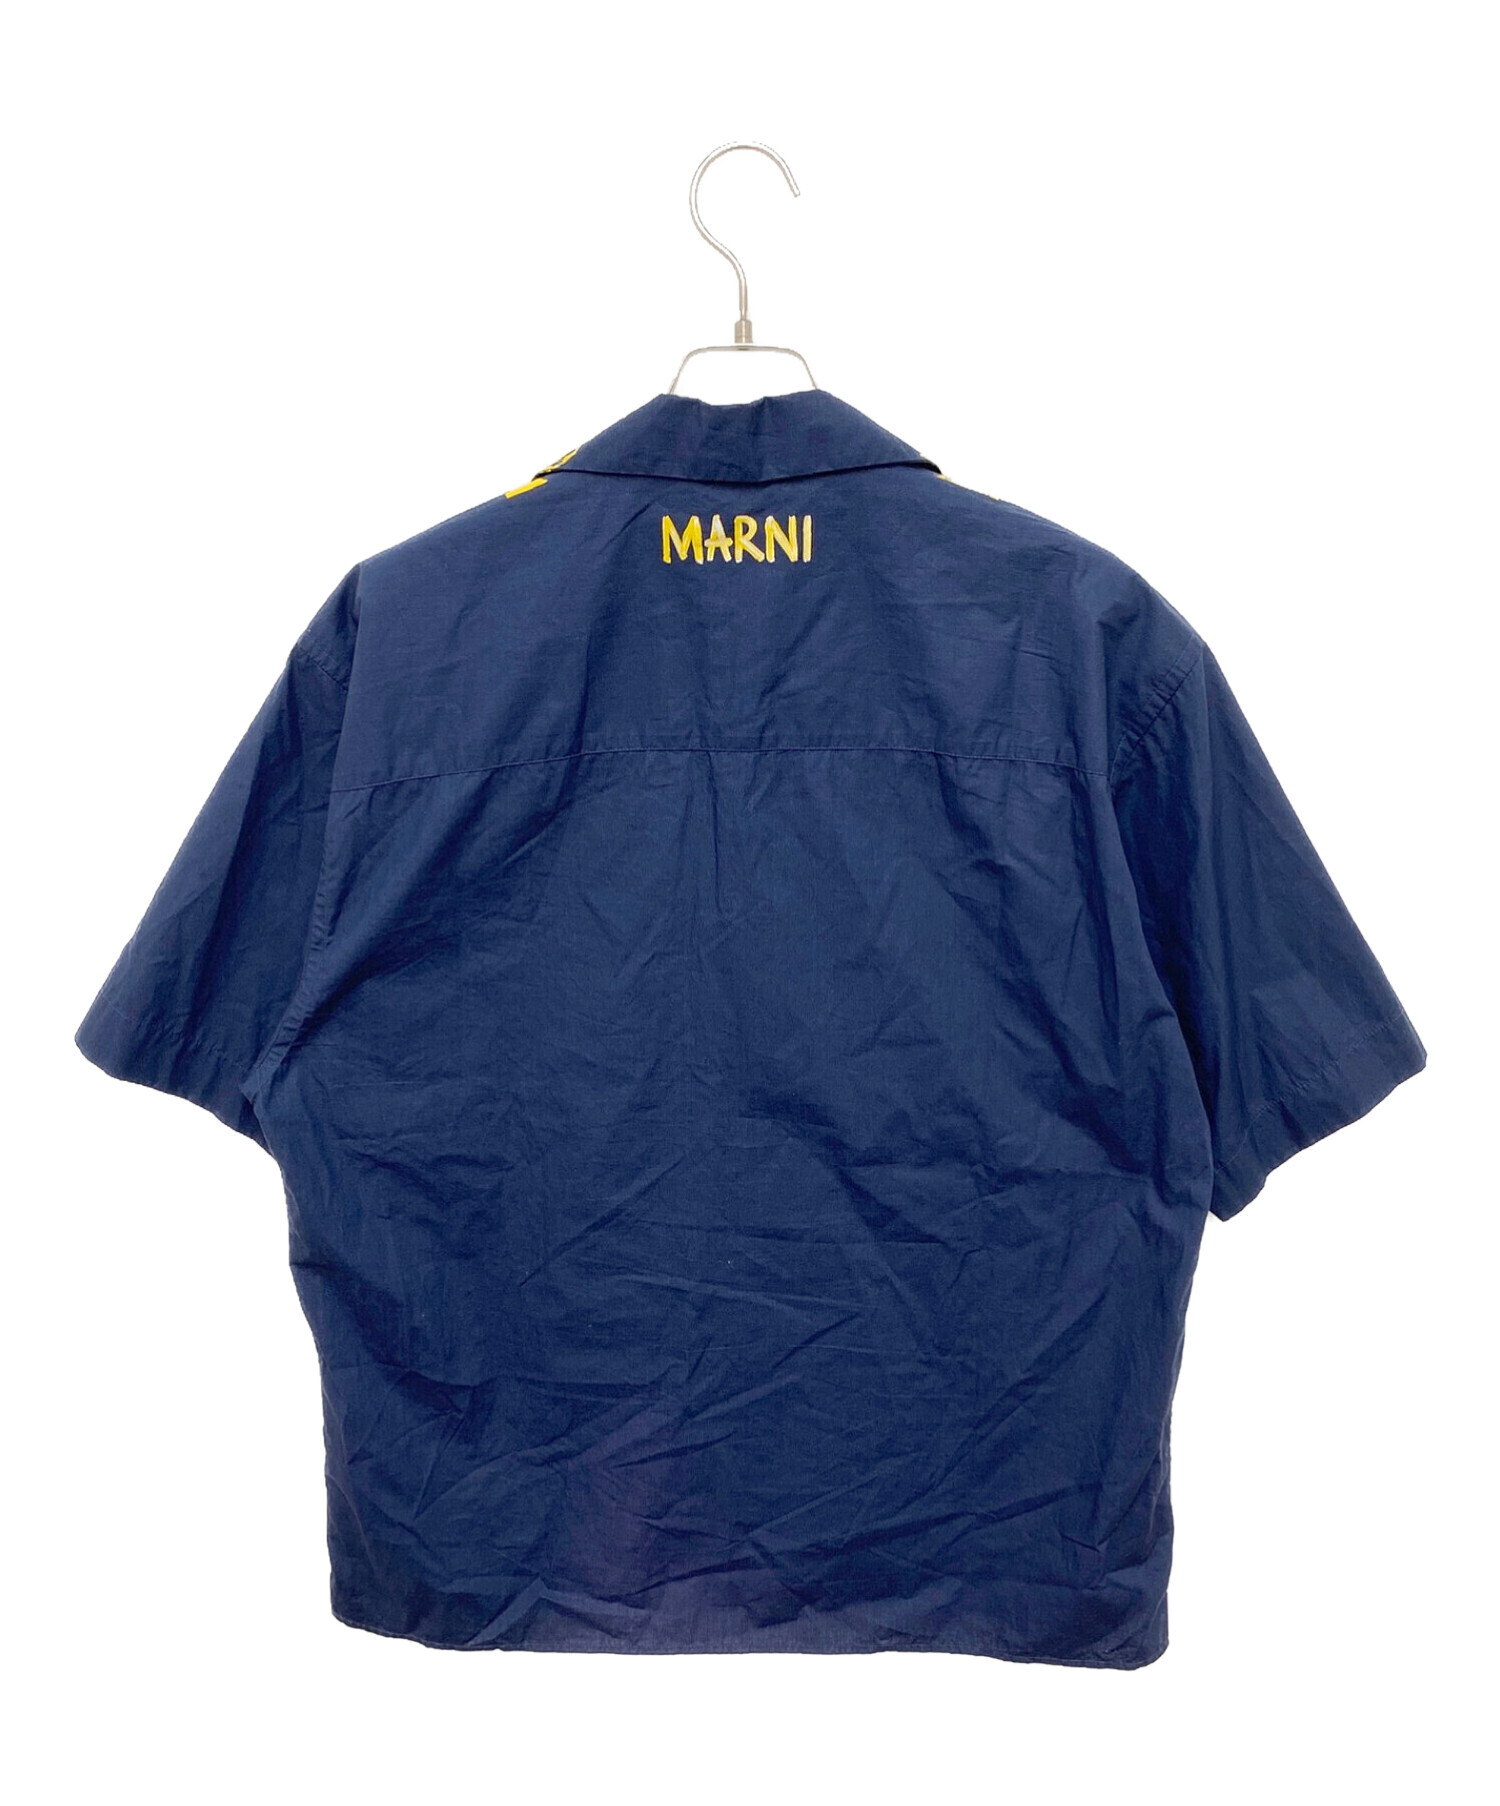 MARNI (マルニ) オープンカラーペイントシャツ ネイビー×イエロー サイズ:48